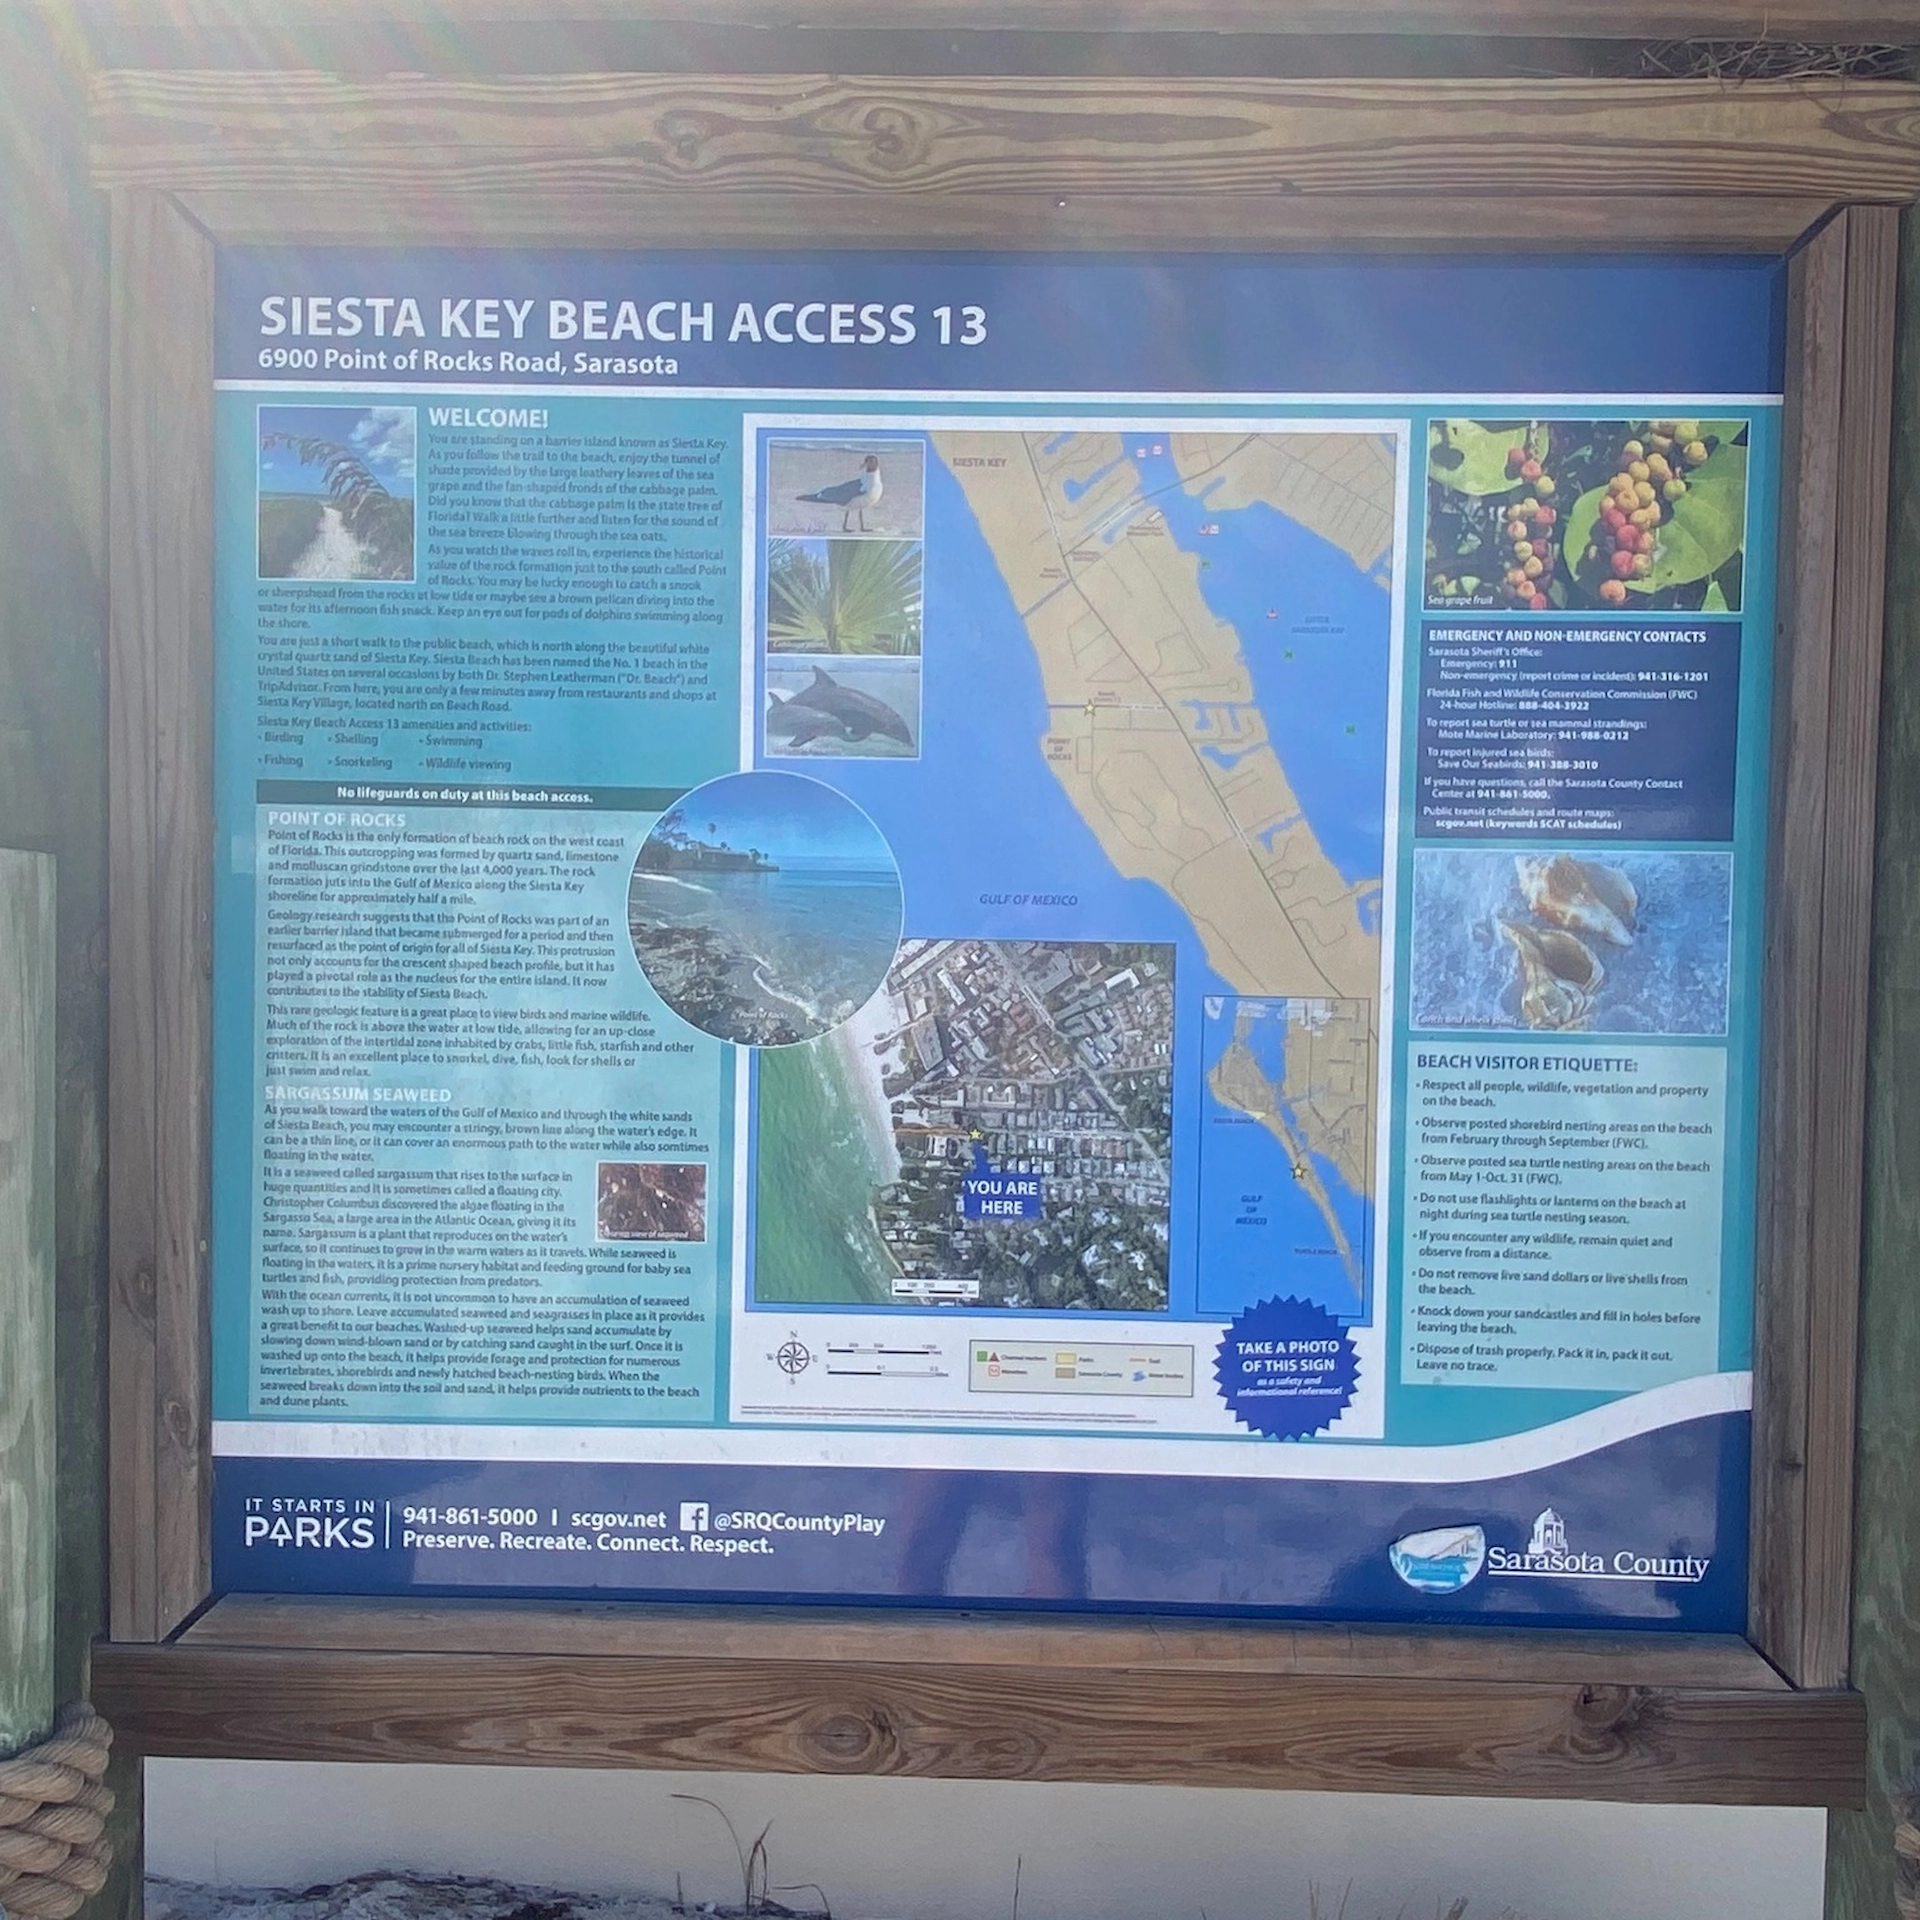 Siesta Key Beach Access 13